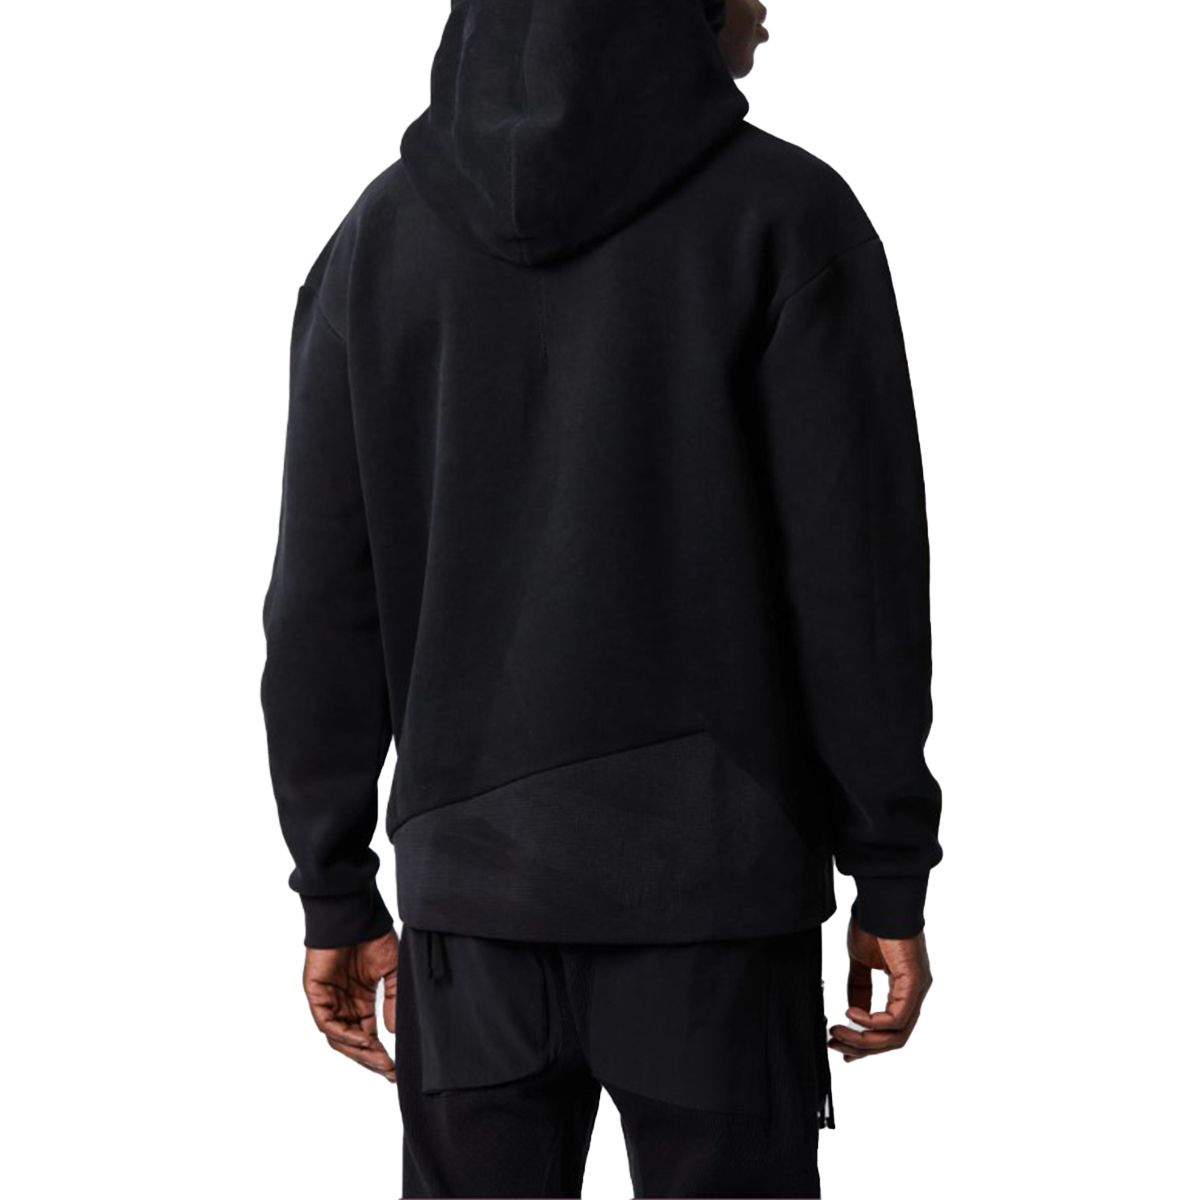 Double Hooded Black Sweatshirt